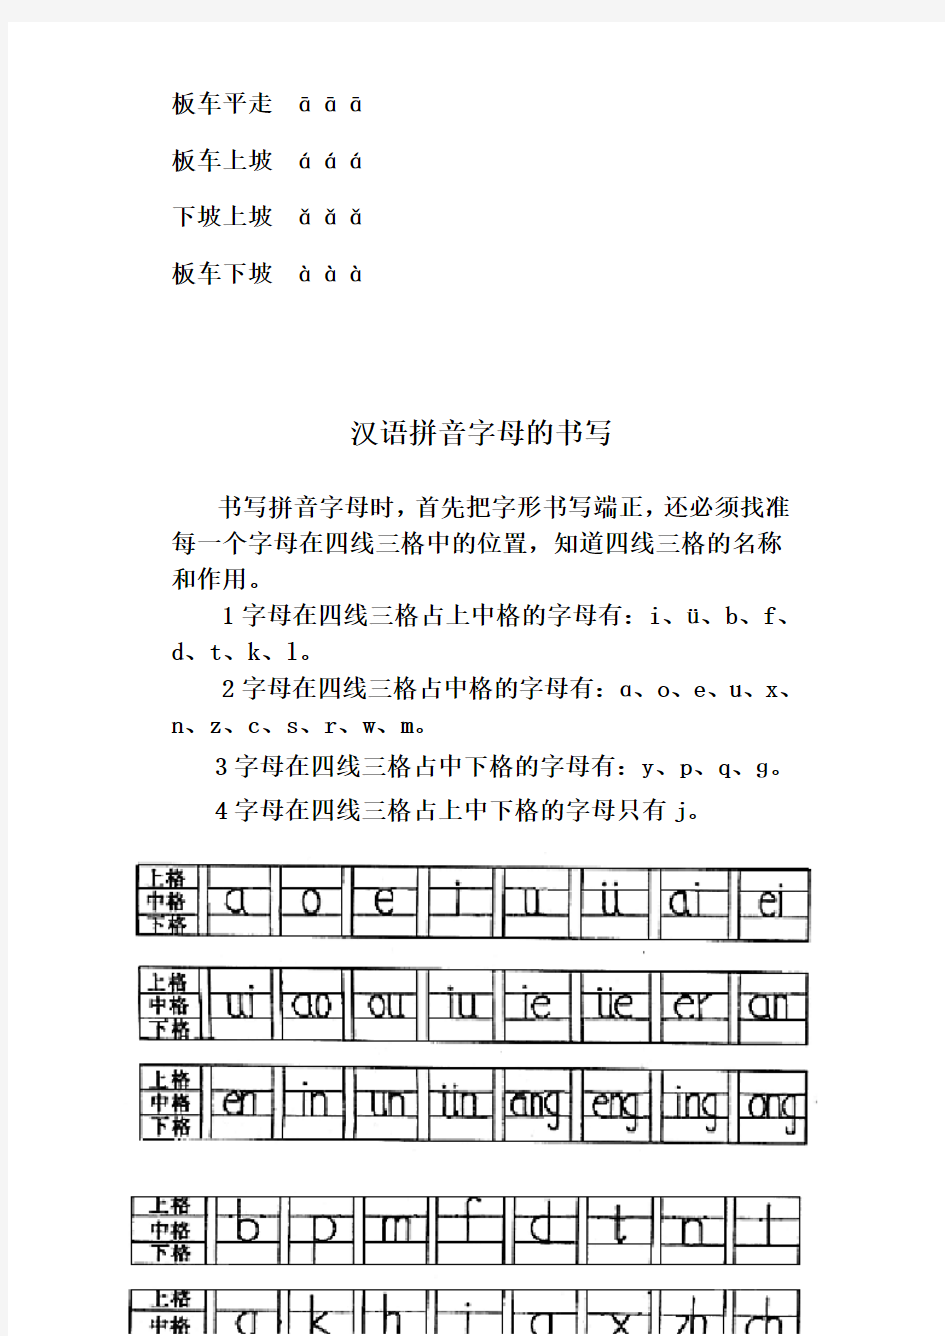 汉语拼音字母书写格式及记忆口诀